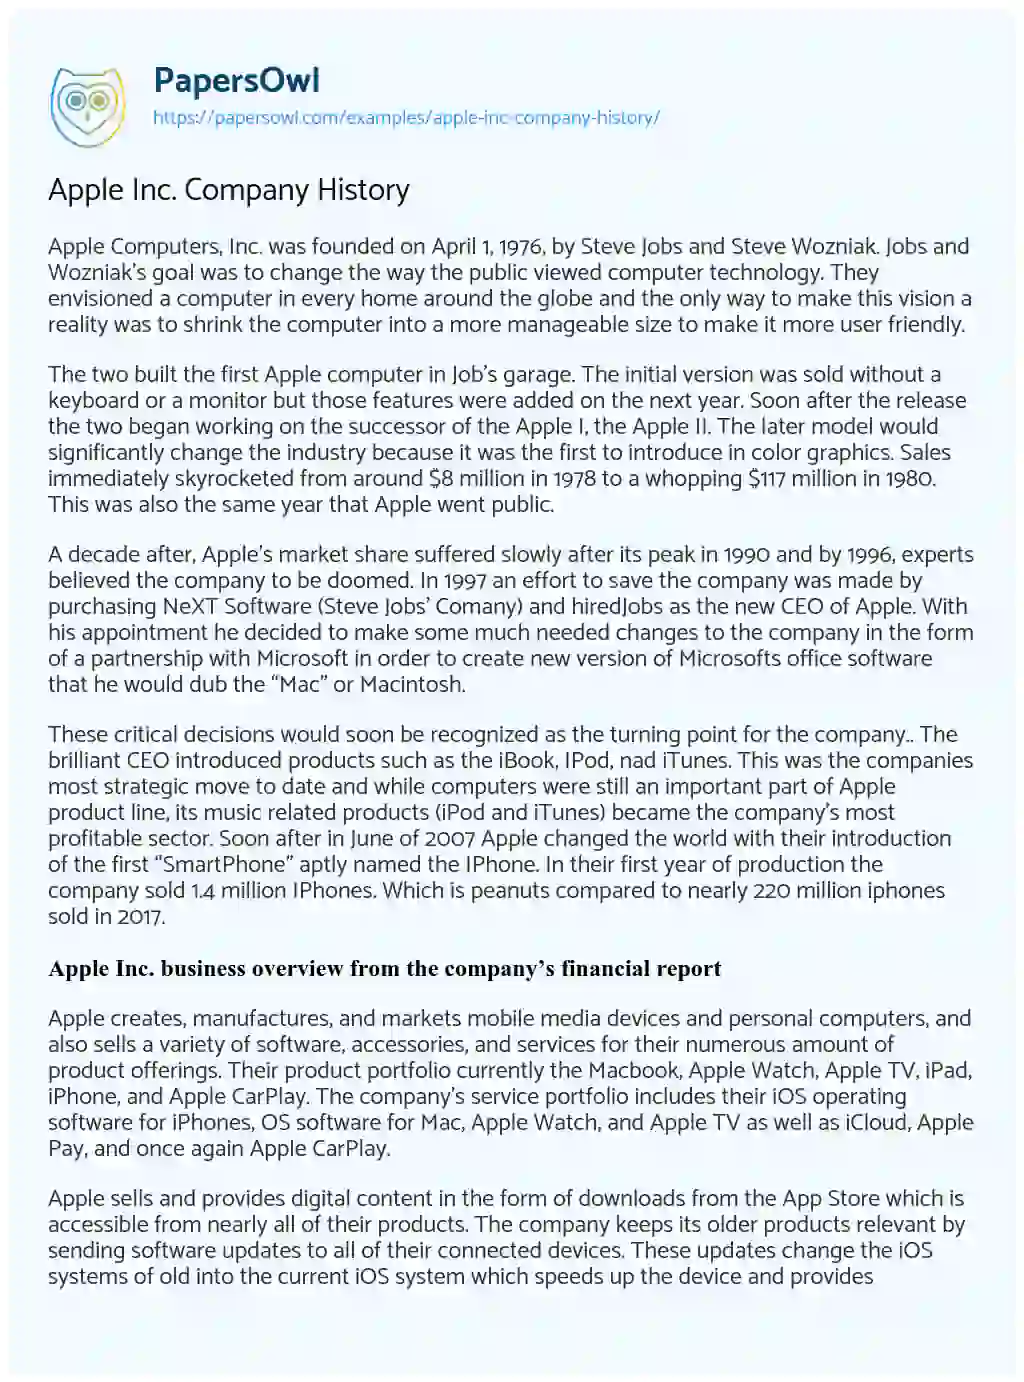 Essay on Apple Inc. Company History